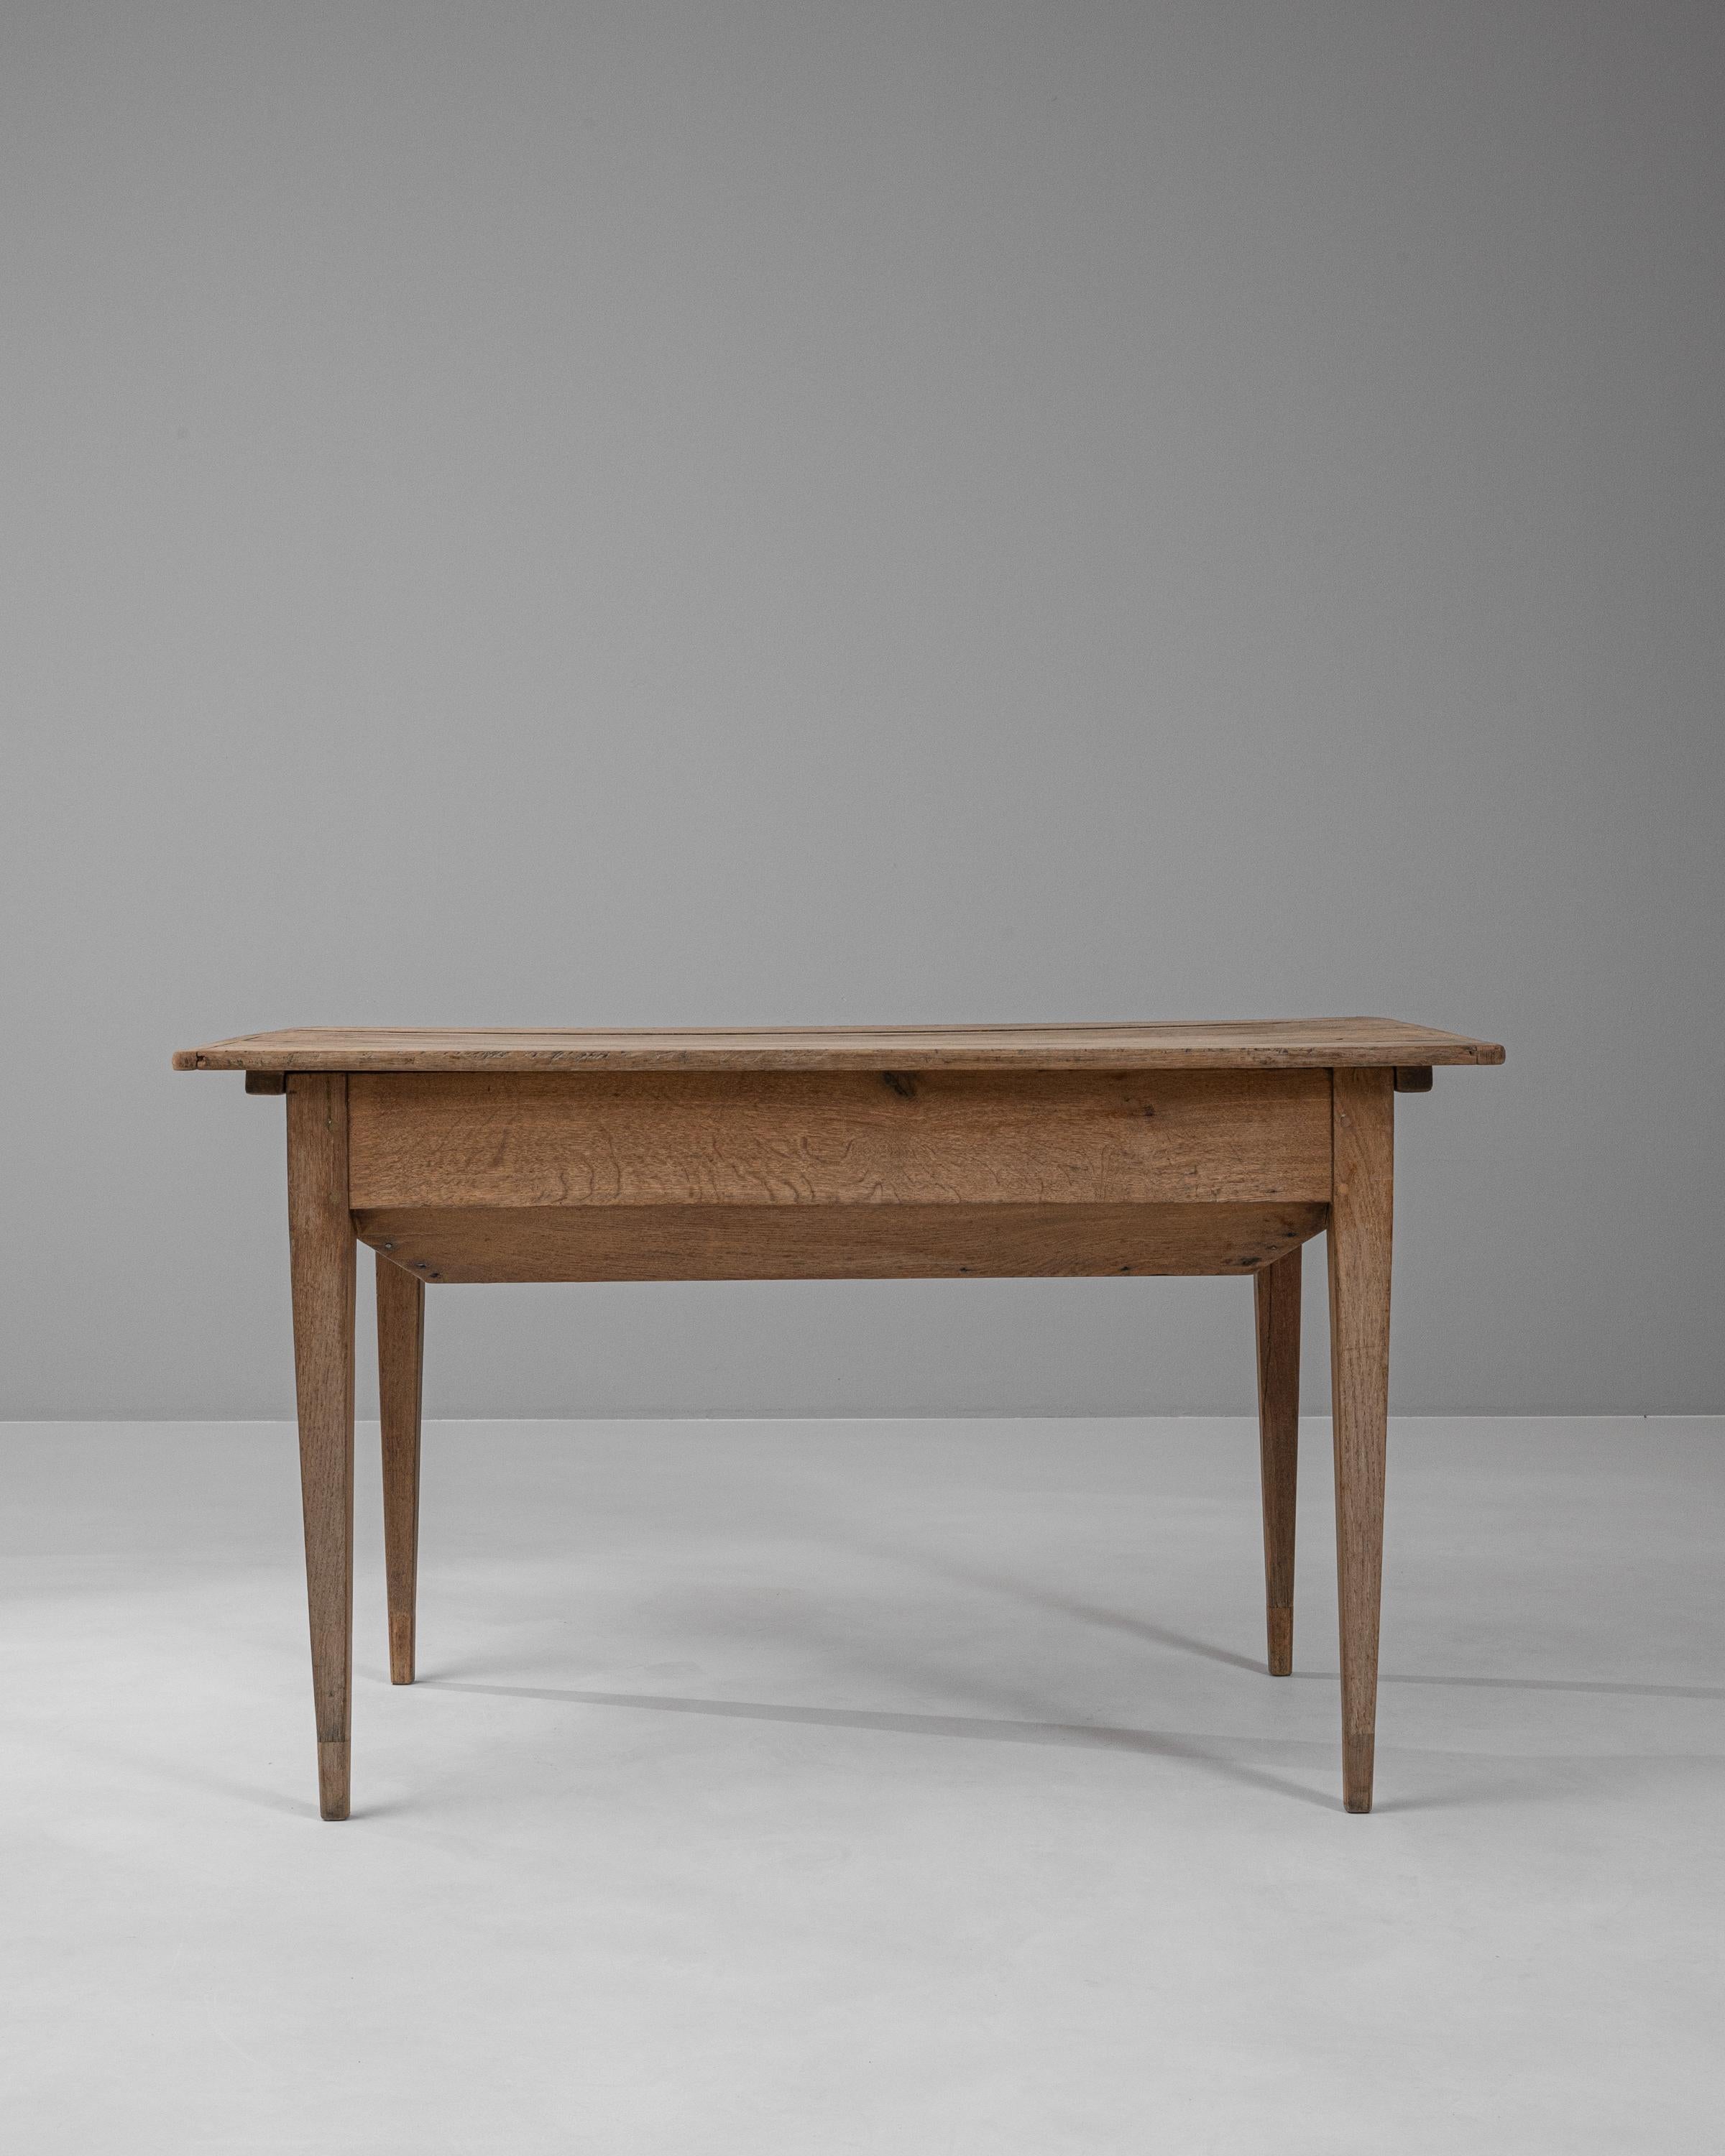 Cette table d'appoint en bois français du XIXe siècle offre un délicieux mélange de design fonctionnel et de beauté intemporelle. Fabriquée en bois riche et durable, la table présente une surface plane et lisse avec un couvercle qui se soulève pour